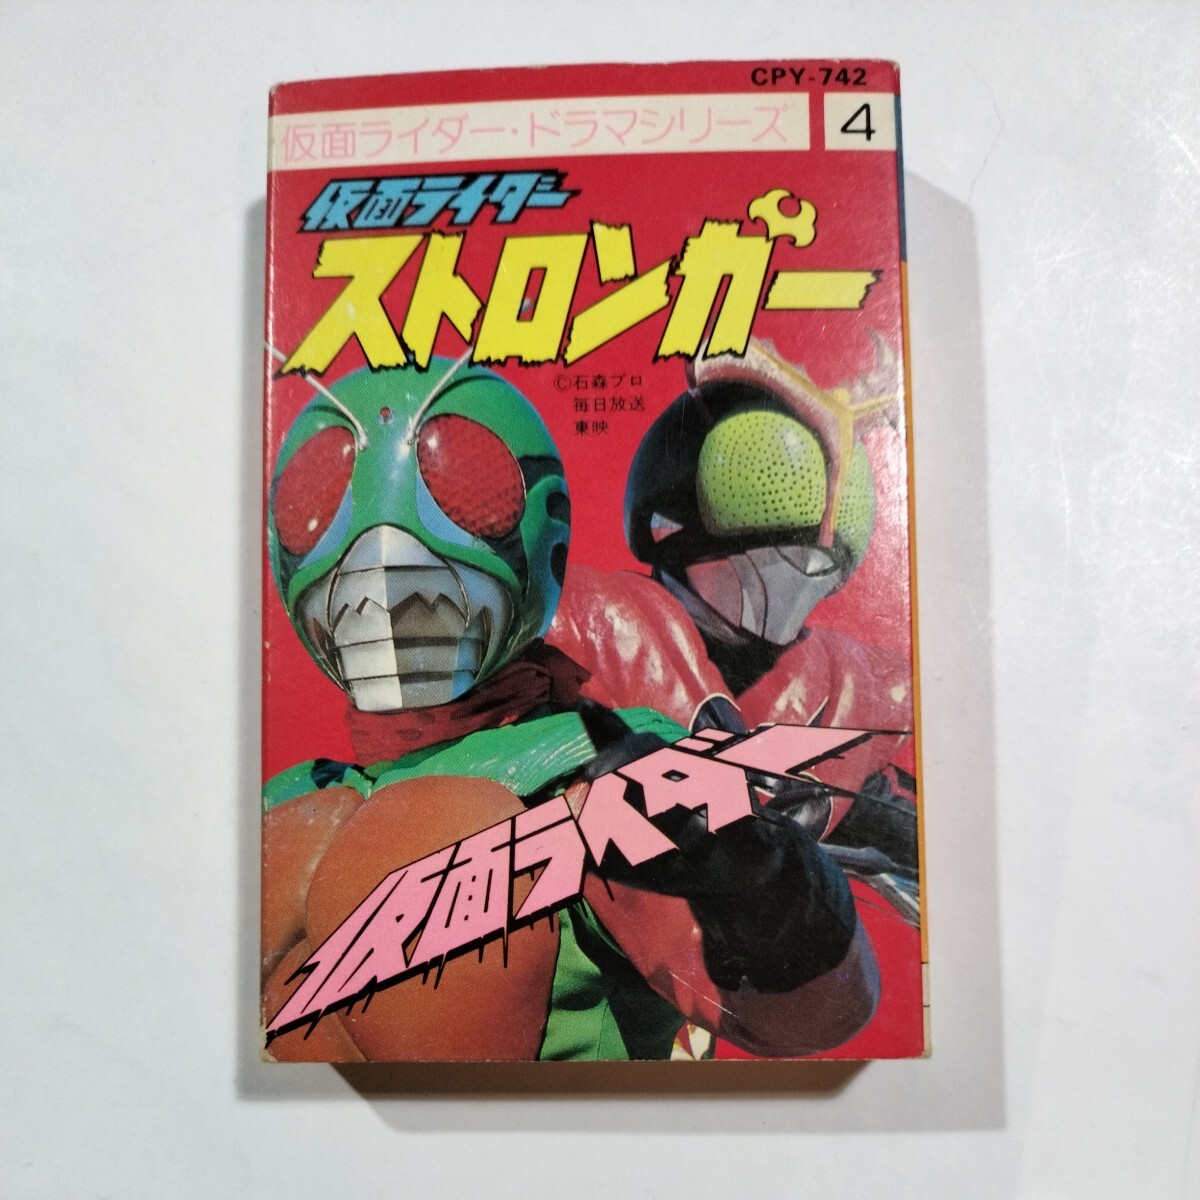  Kamen Rider * драма серии ④ Stronger новый Kamen Rider кассетная лента 